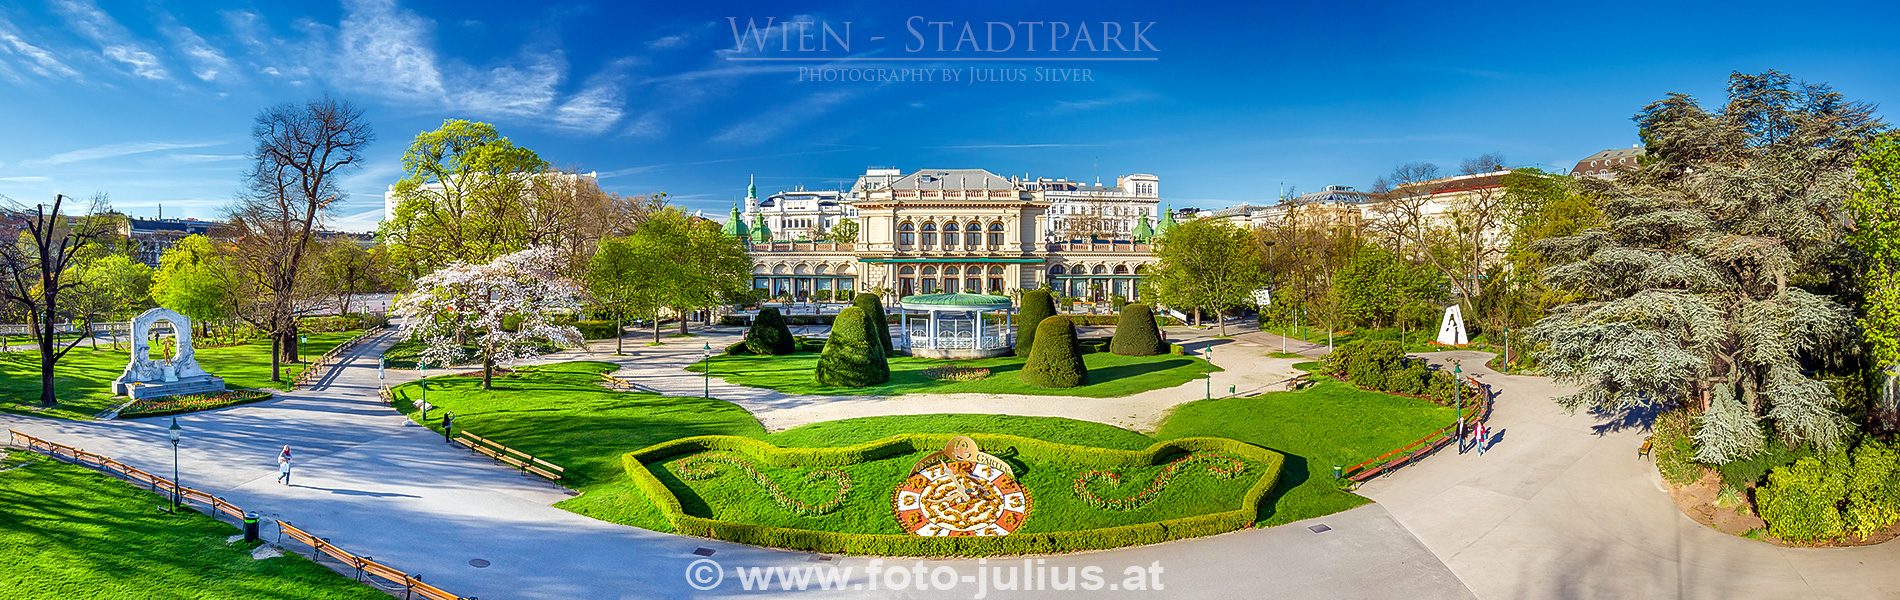 W6799a_Stadtpark_Wien.jpg, 933kB